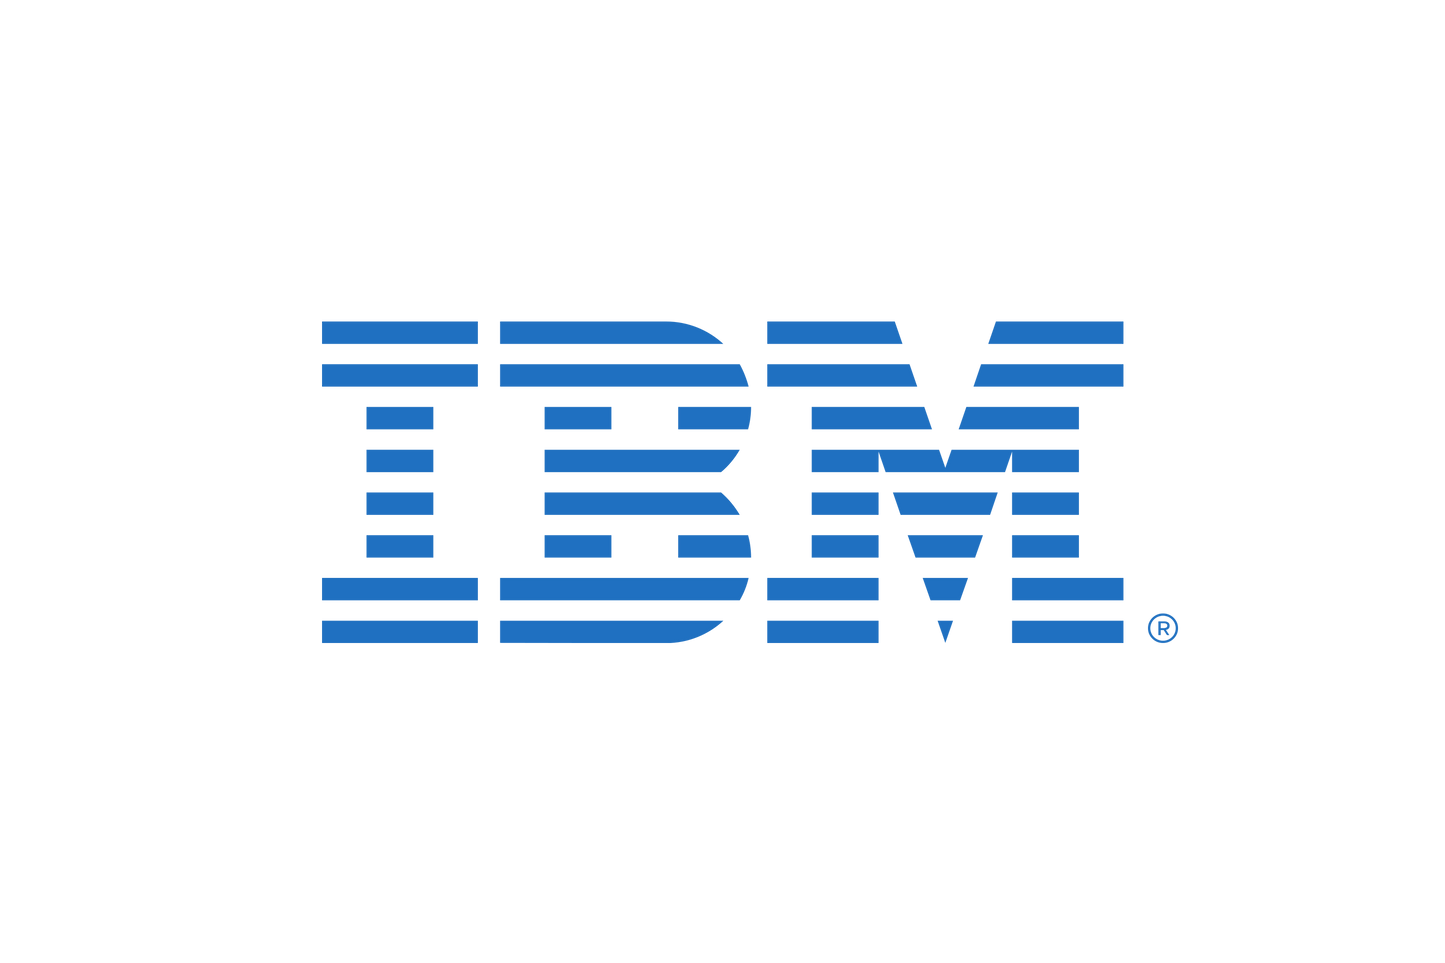 IBM Spectrum Fusion Trial per 6 Terabytes Monthly License